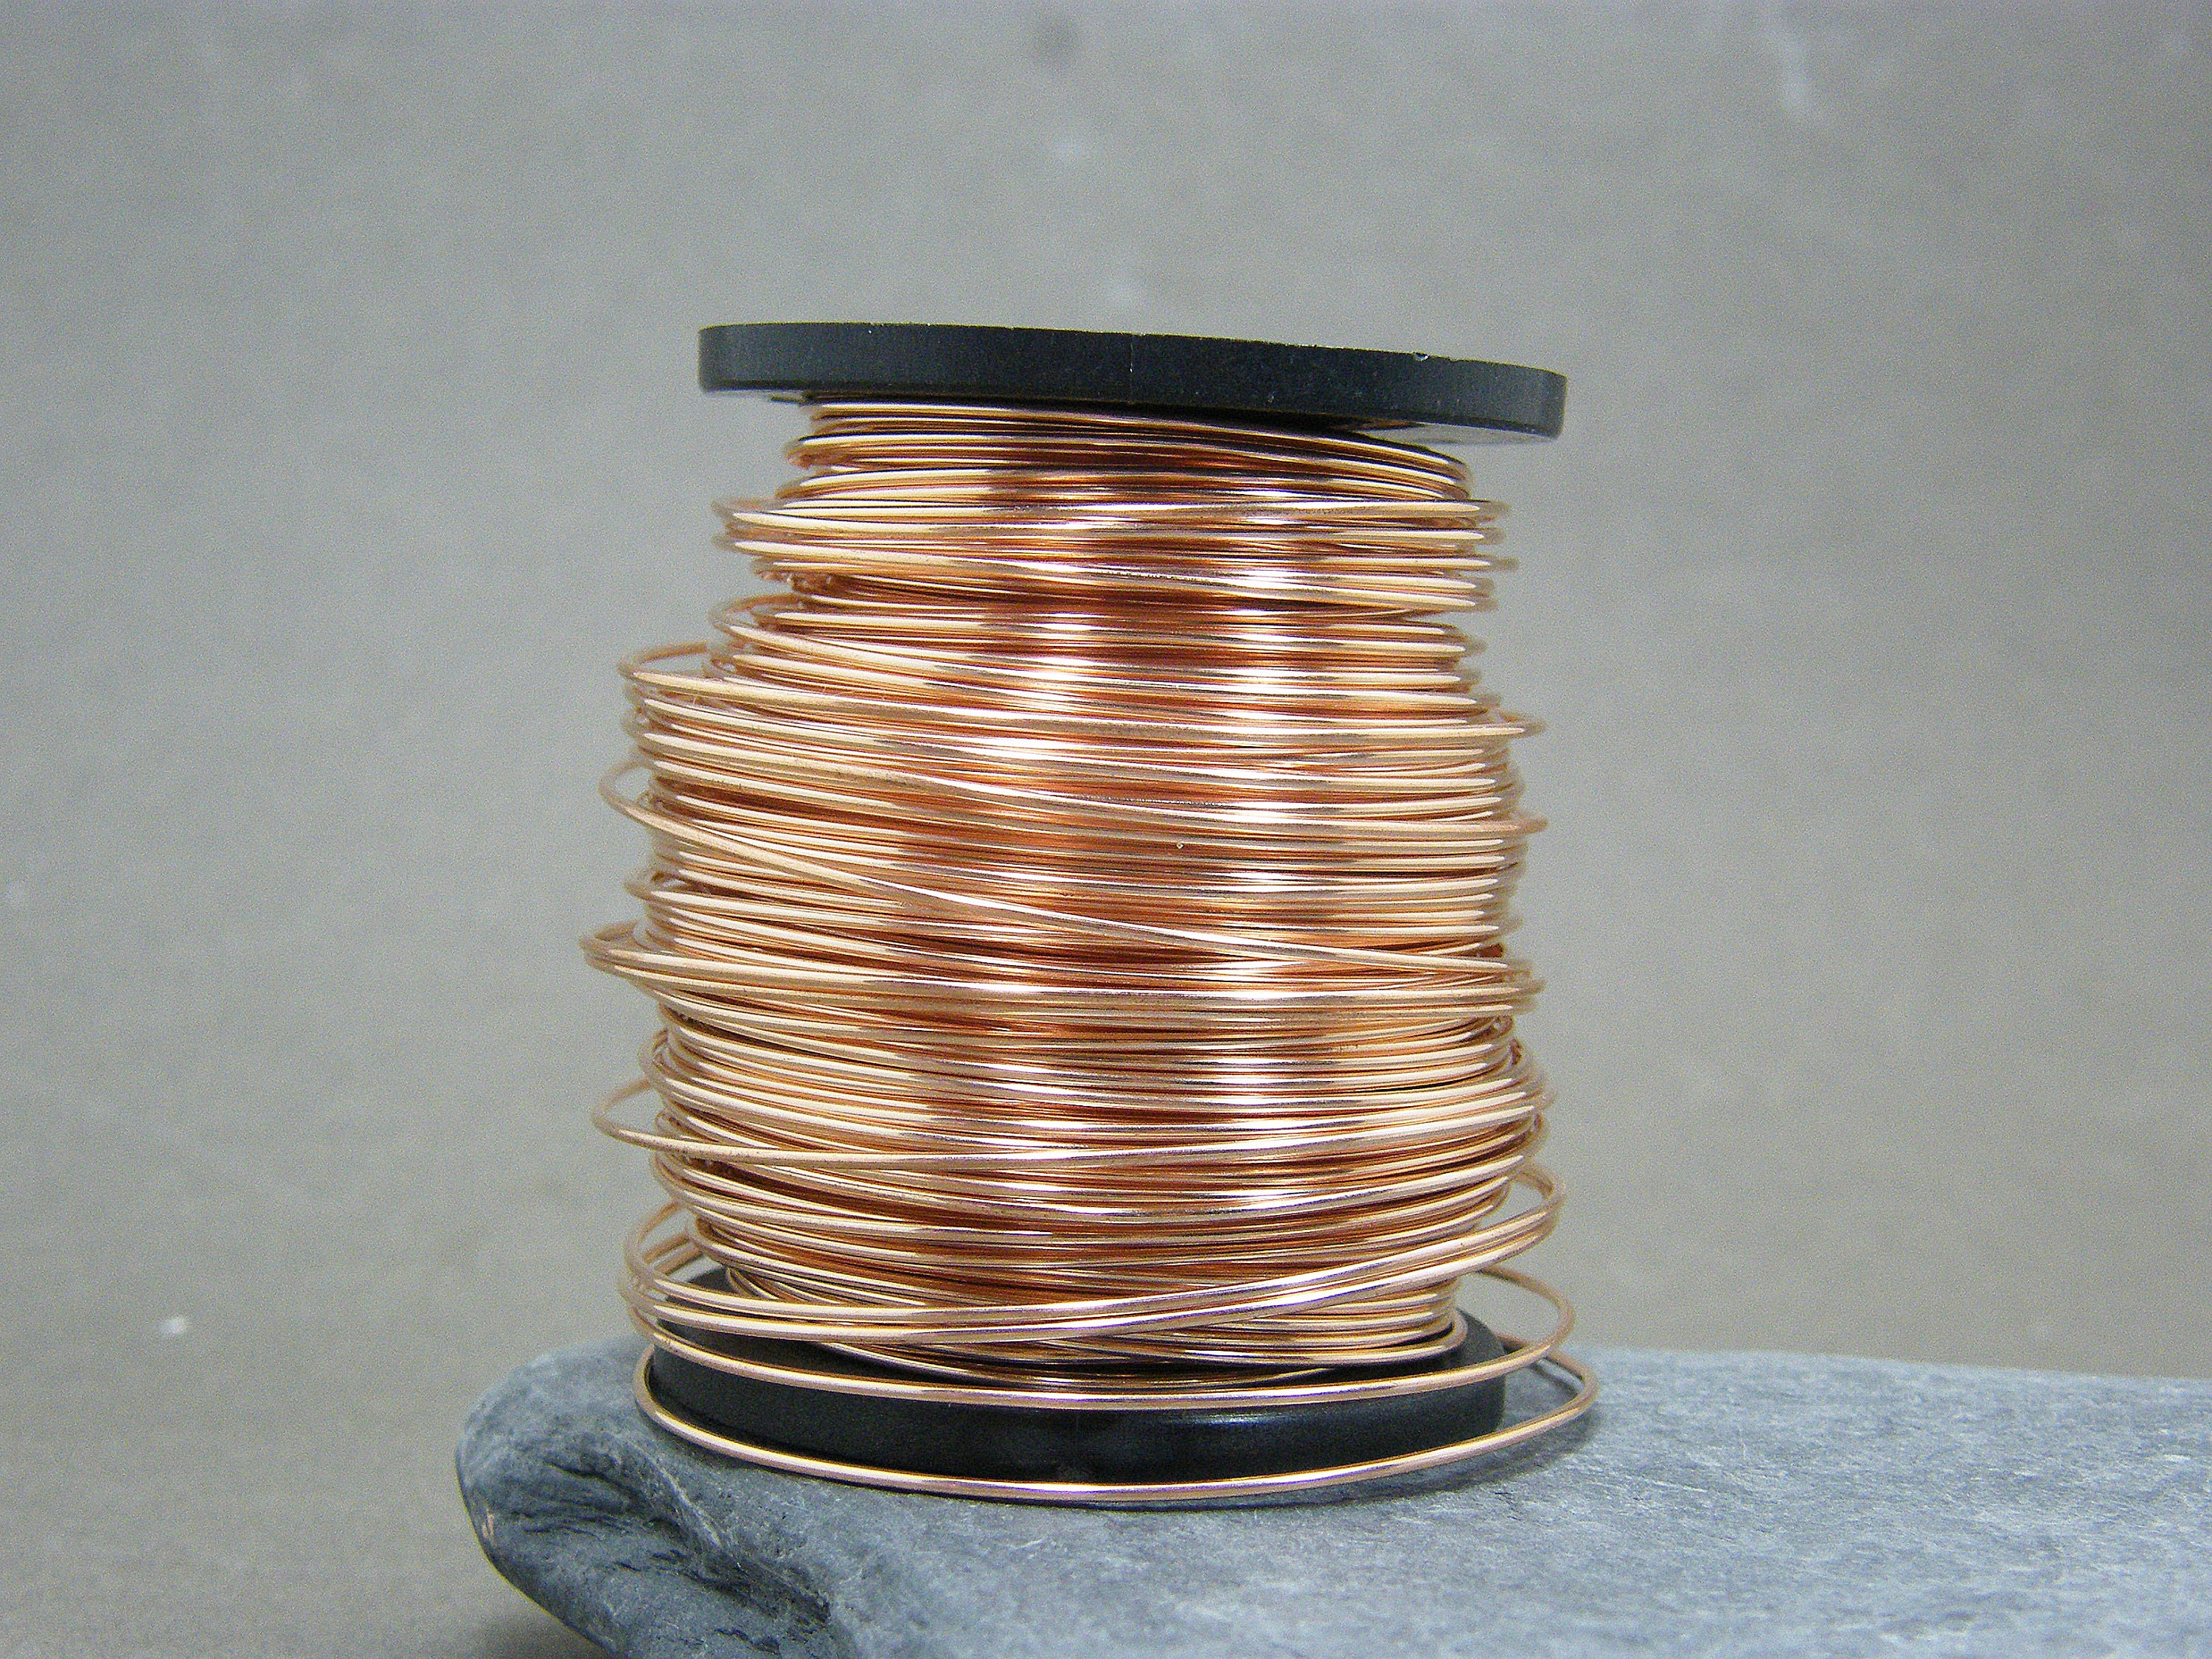 Bead Landing 16 Gauge Dead Soft Wire in Copper - 5 yd